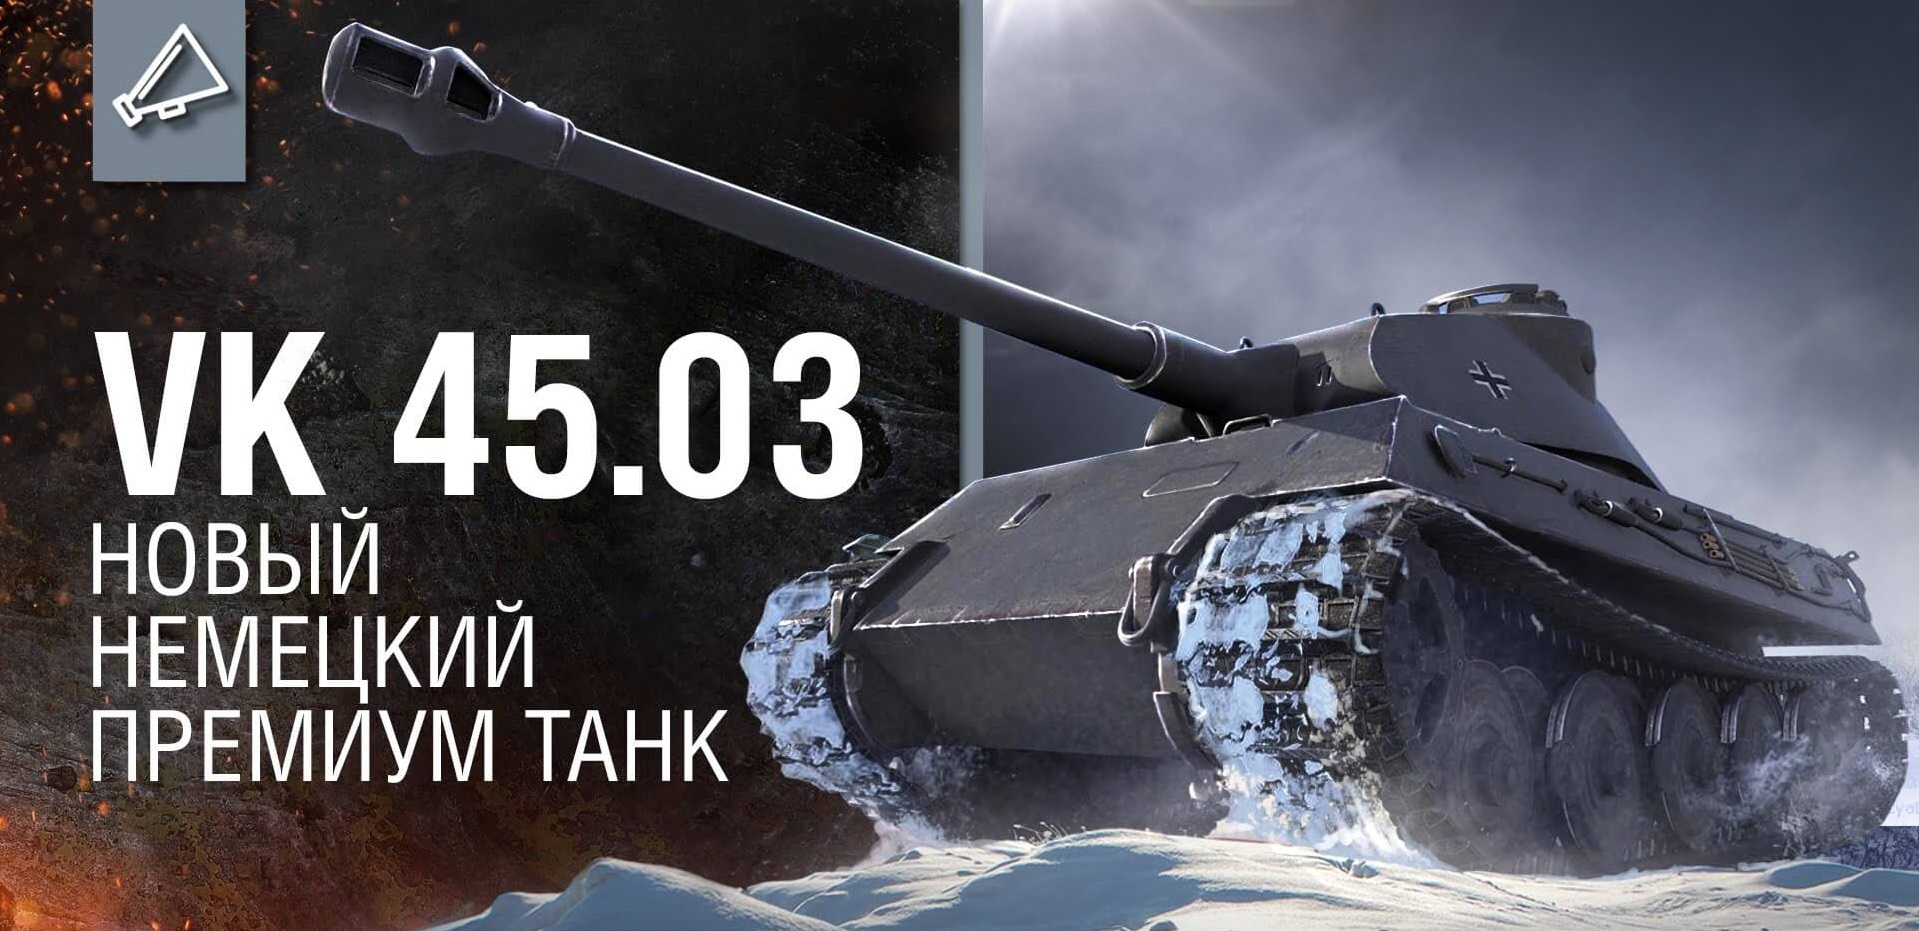 VK 45.03 "Tiger III: новый премиум танк"